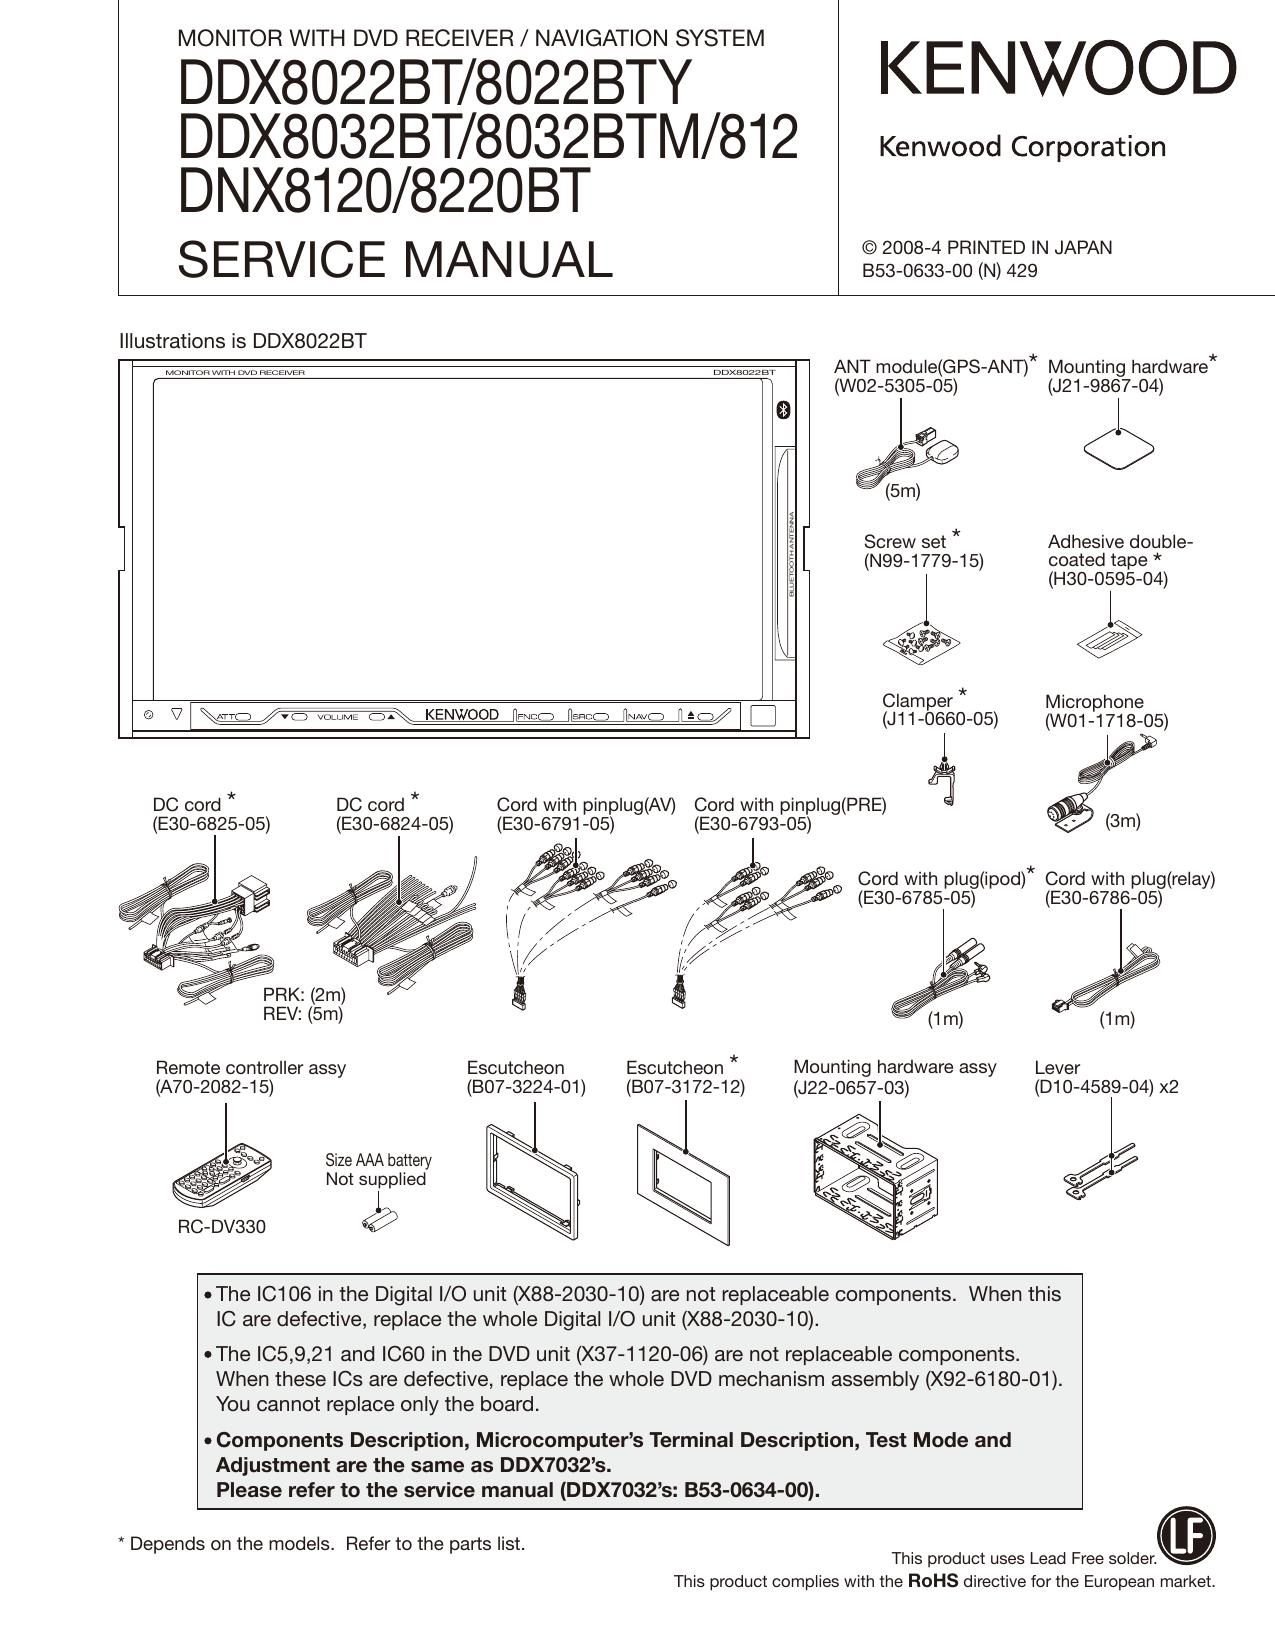 Kenwood DDX 8032 BT Service Manual